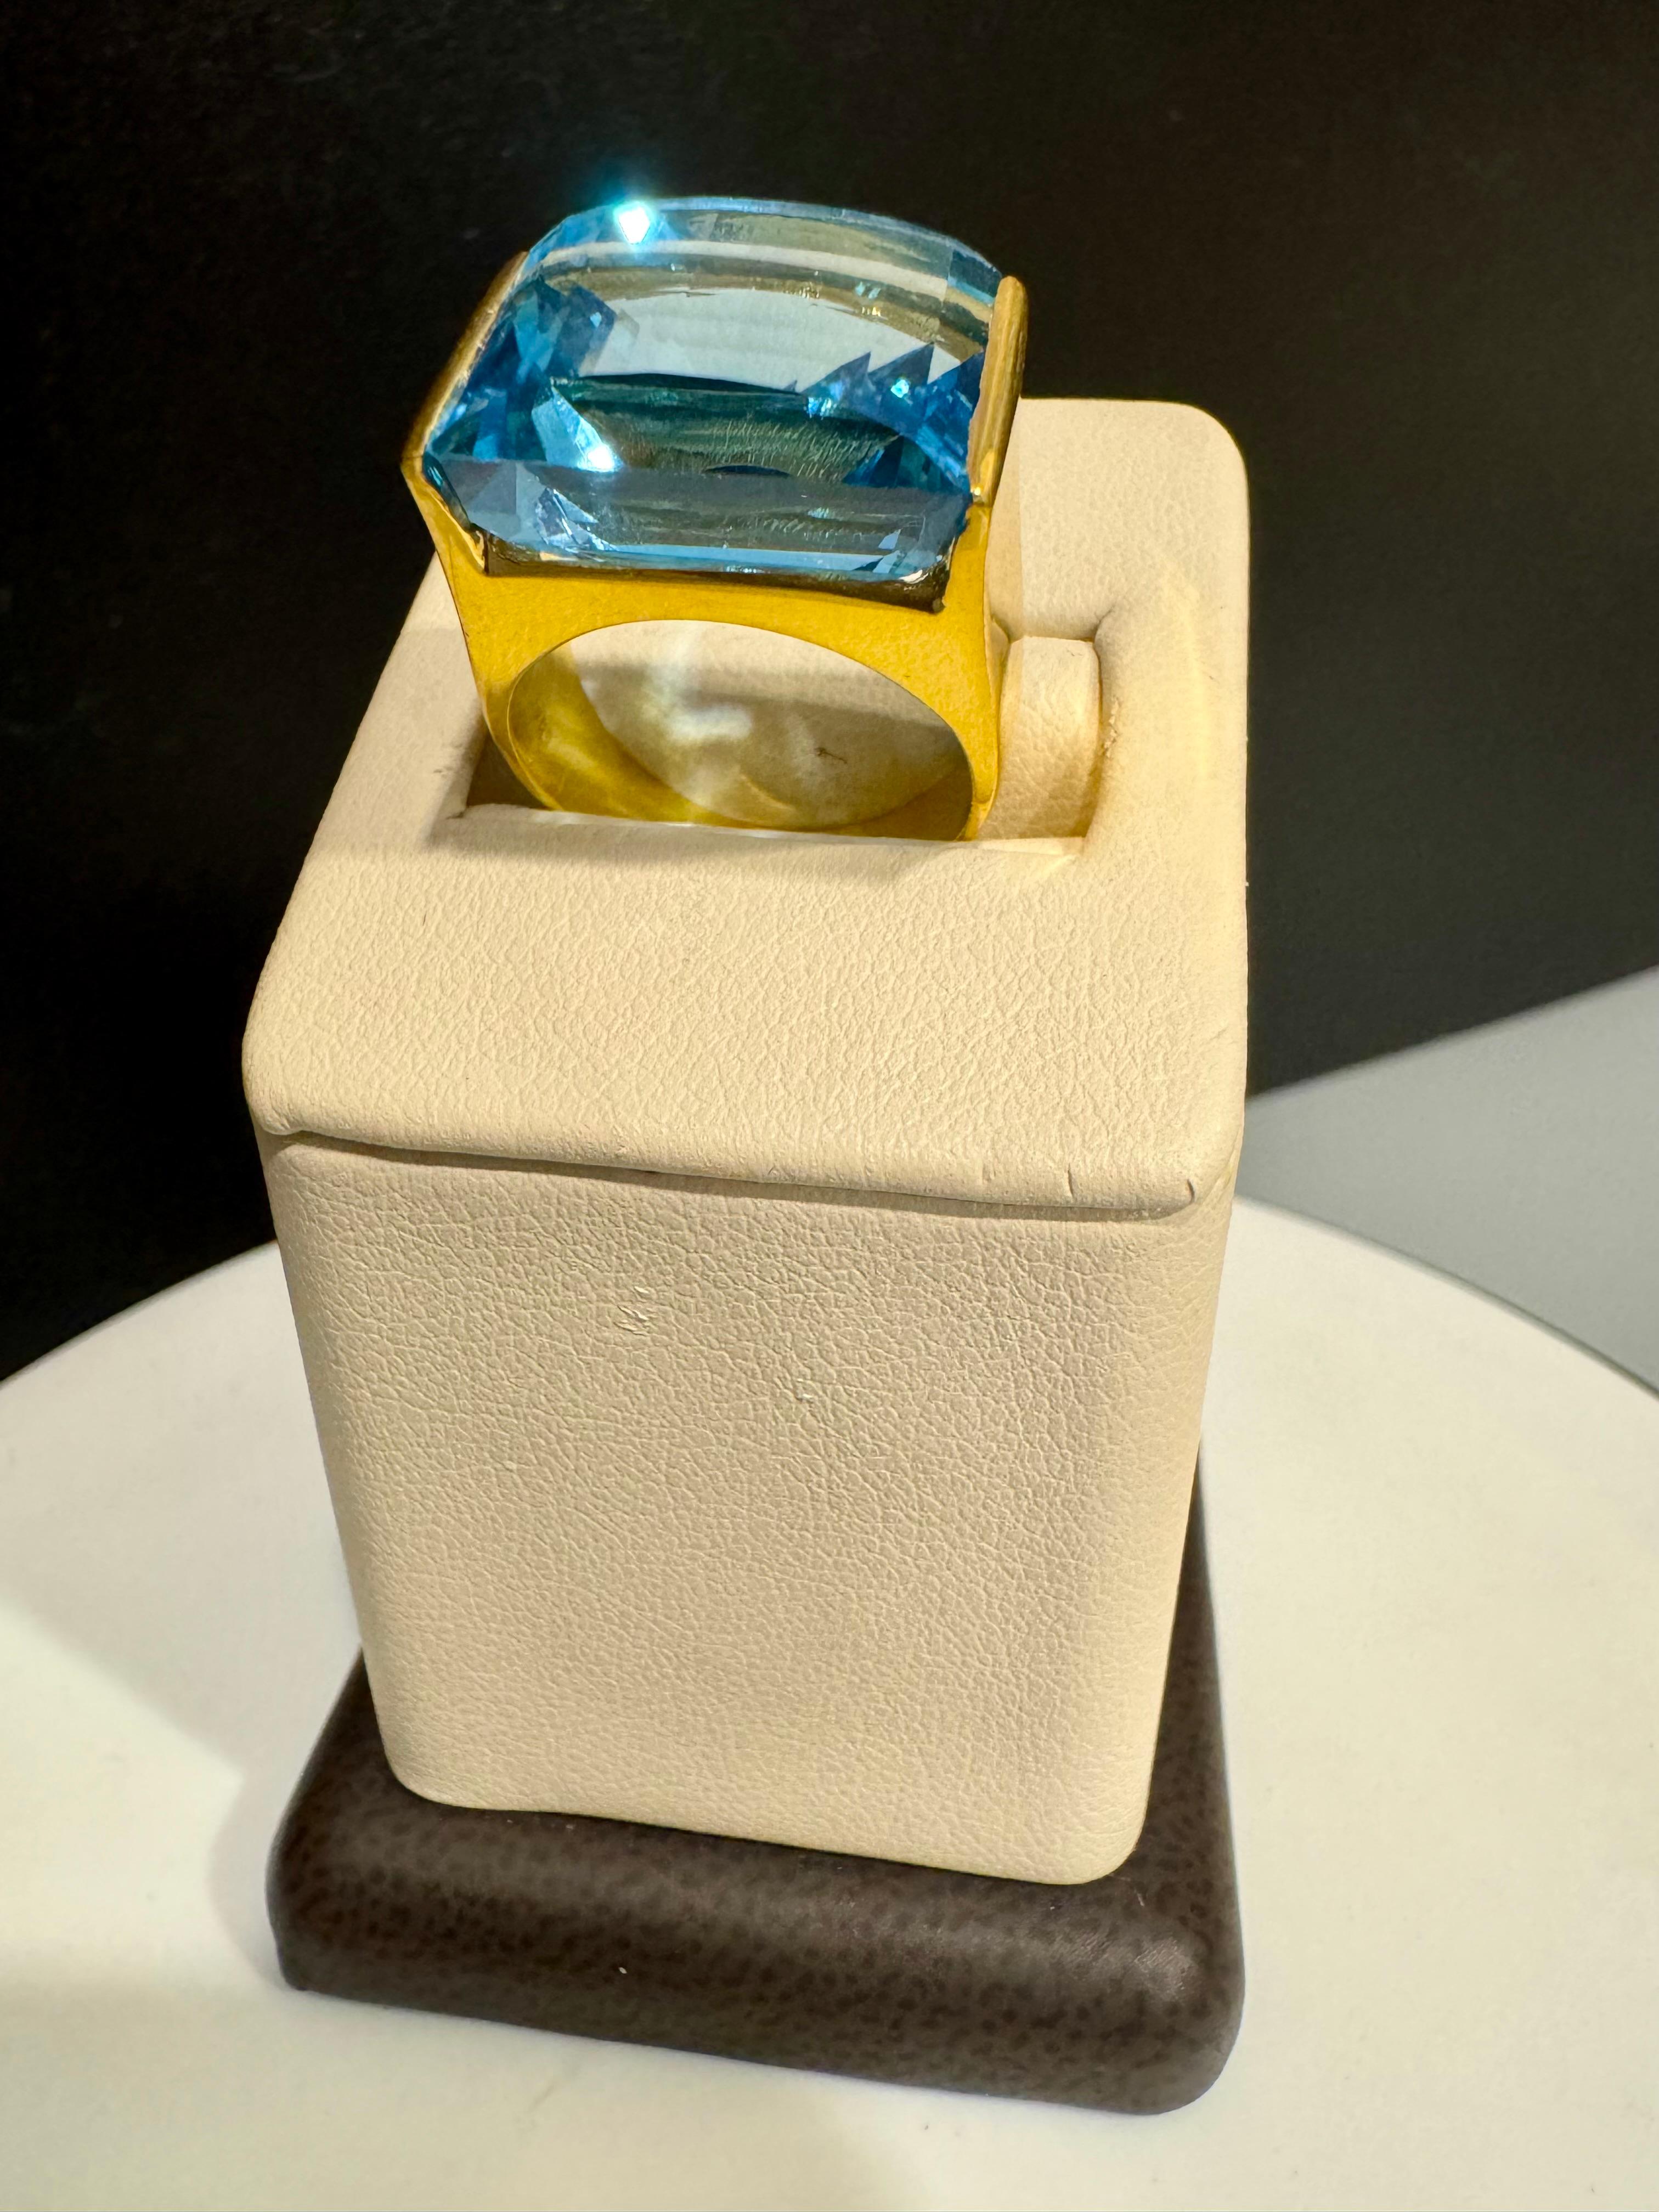 10 Carat Natural Blue Topaz Cocktail Ring 18 Karat Yellow Gold, Estate Size 6.5 5